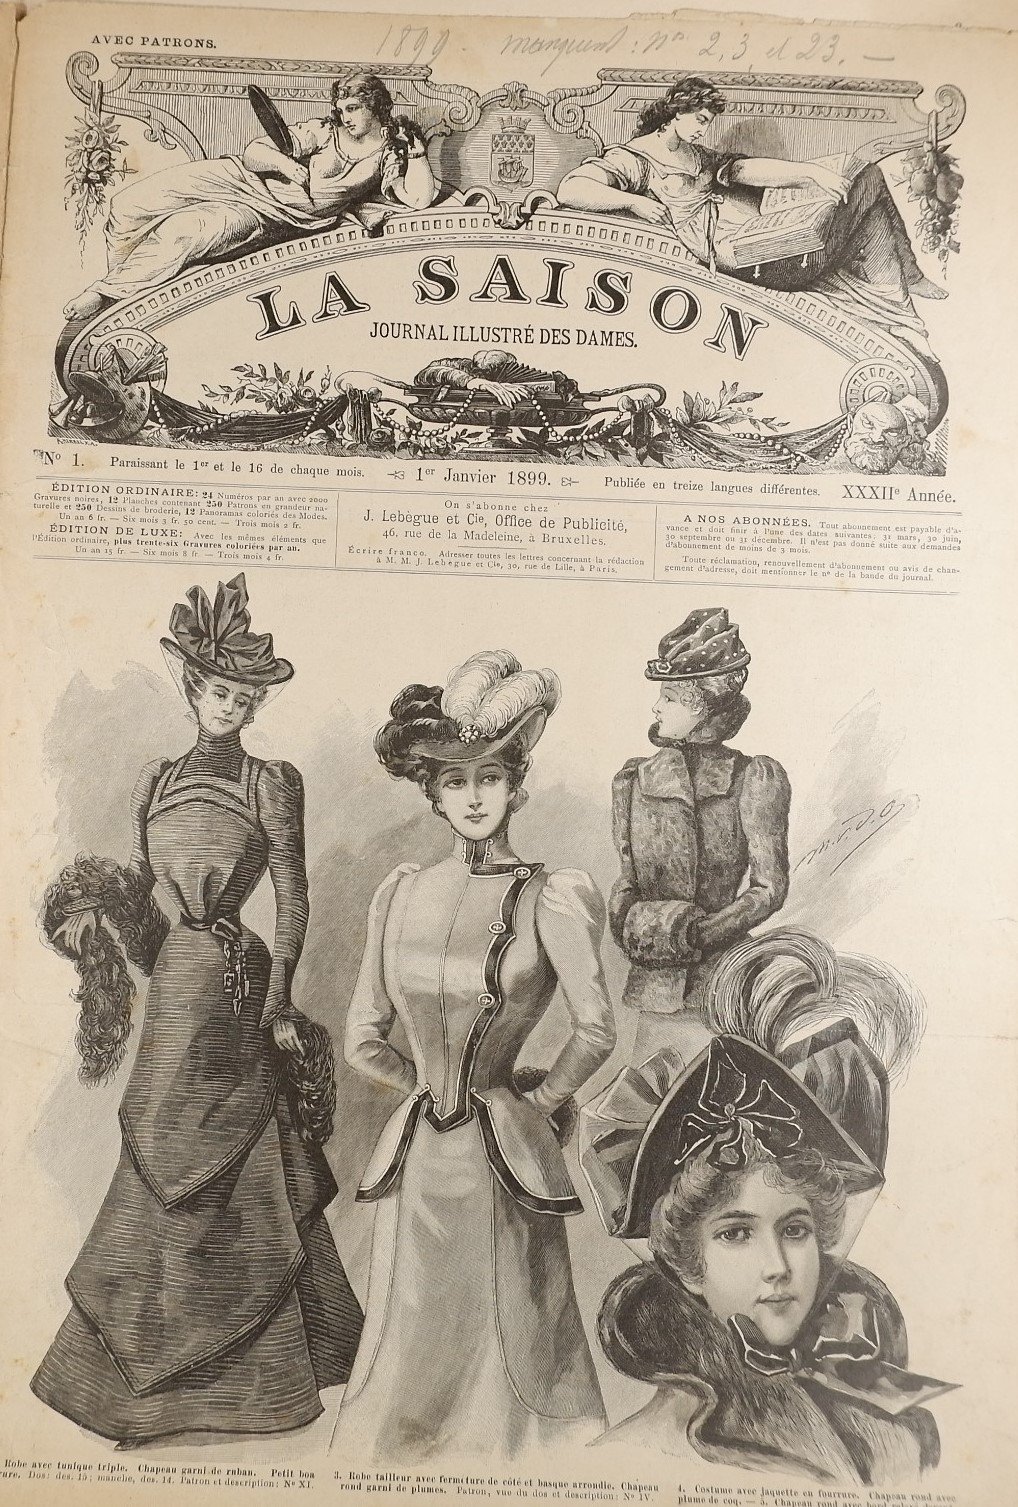 Sammlung: La Saison, Journal illustre`des dames (1899) (Volkskunde- und Freilichtmuseum Roscheider Hof RR-F)